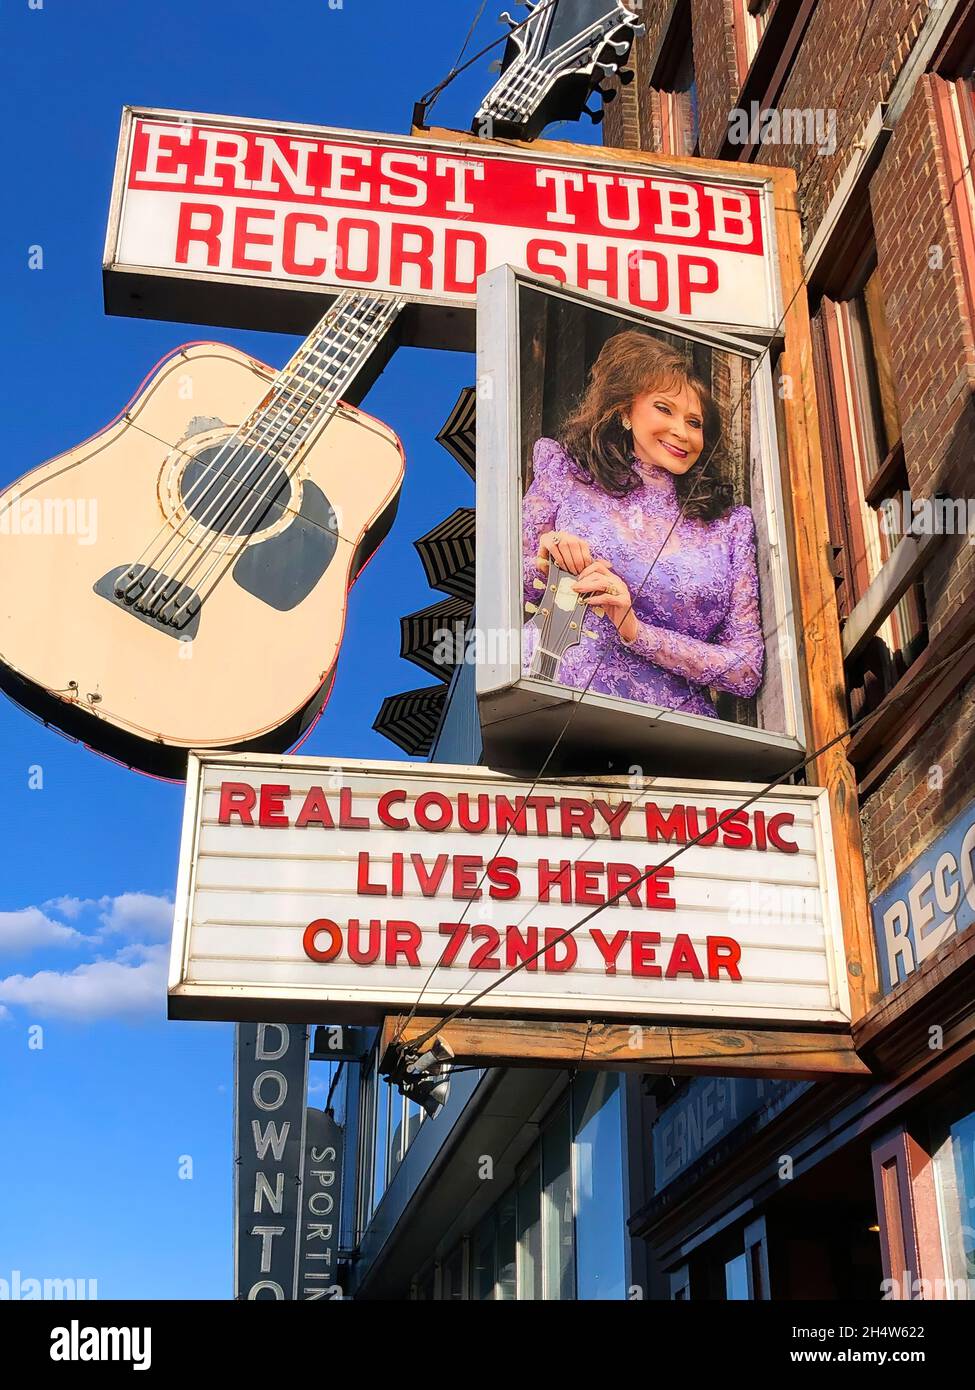 Nashville, TN, USA - 22. September 2019: Der berühmte Ernest Tubb Record Shop auf der Broadway Street, in dem das Midnate Jamboree untergebracht war, das von der gegründet wurde Stockfoto